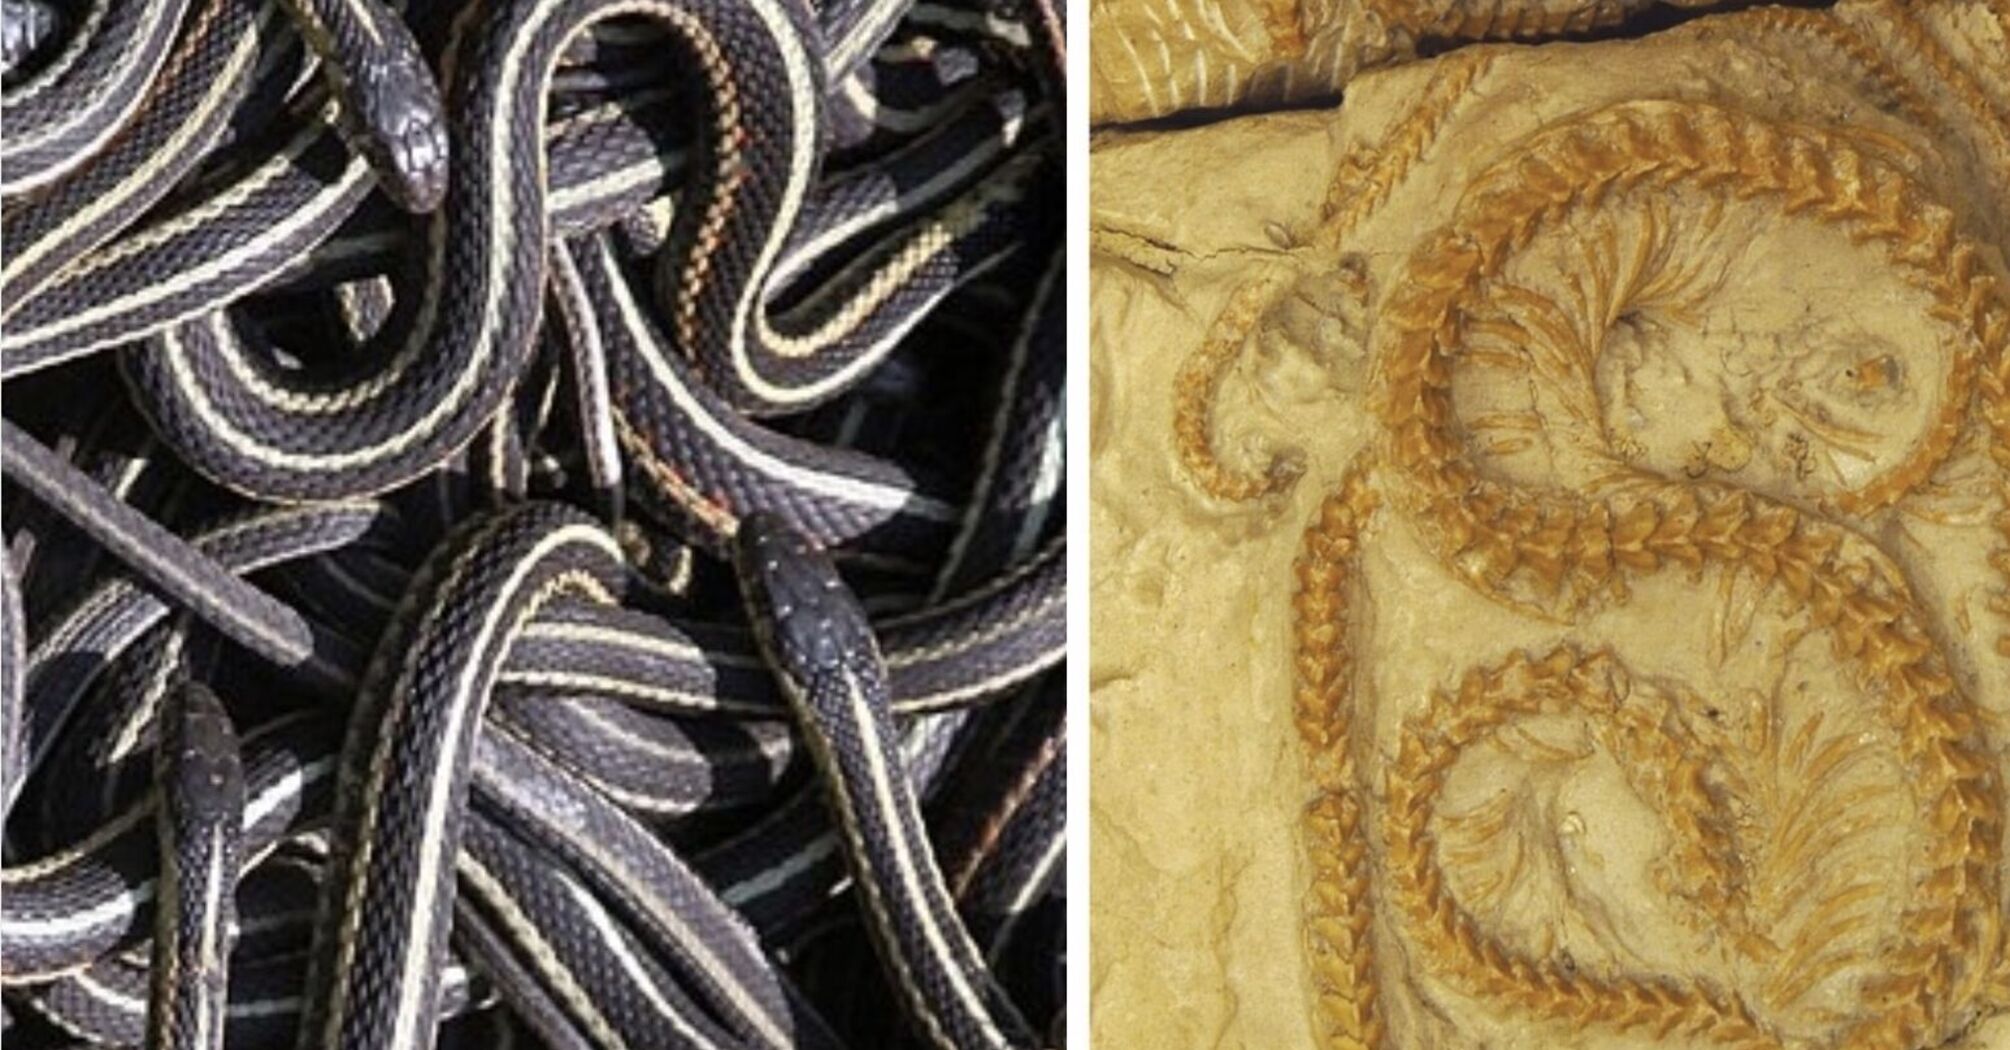 Померли під час сплячки: у США серед вулканічного попелу знайшли абсолютно новий вид стародавніх змій (фото)